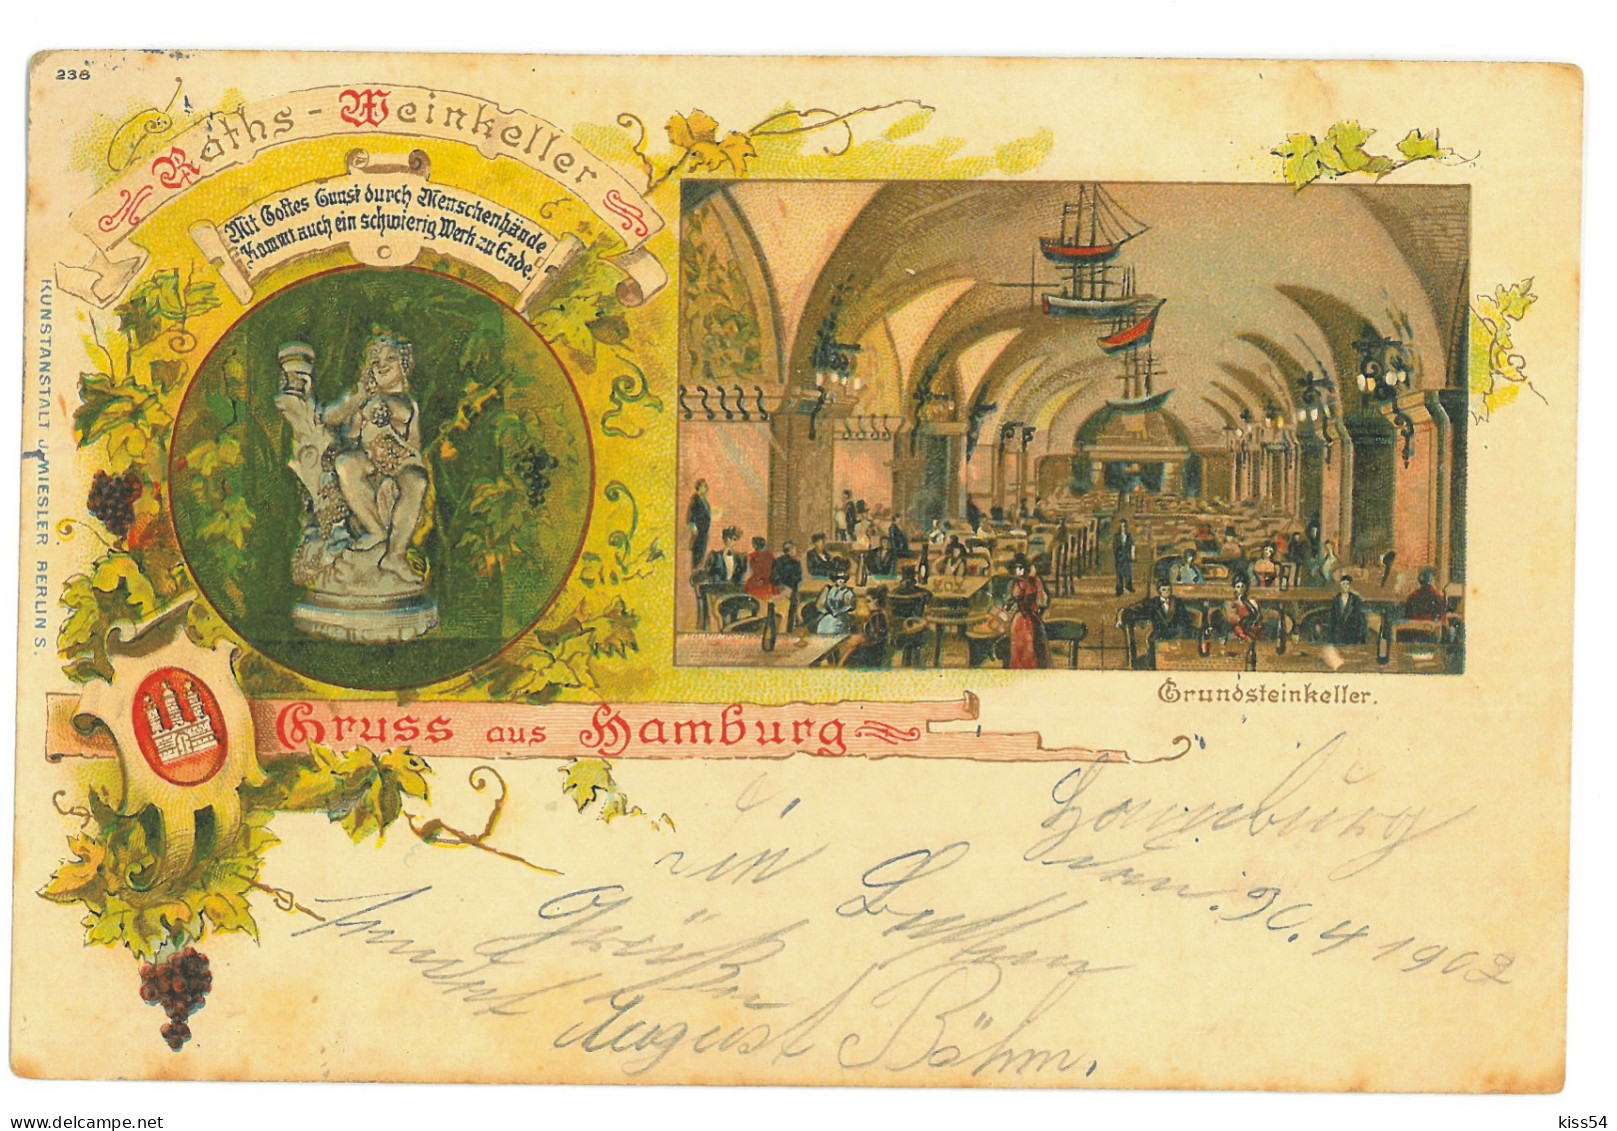 GER 02 - 16925 HAMBURG, Litho, Germany - Old Postcard - Used - 1902 - Harburg